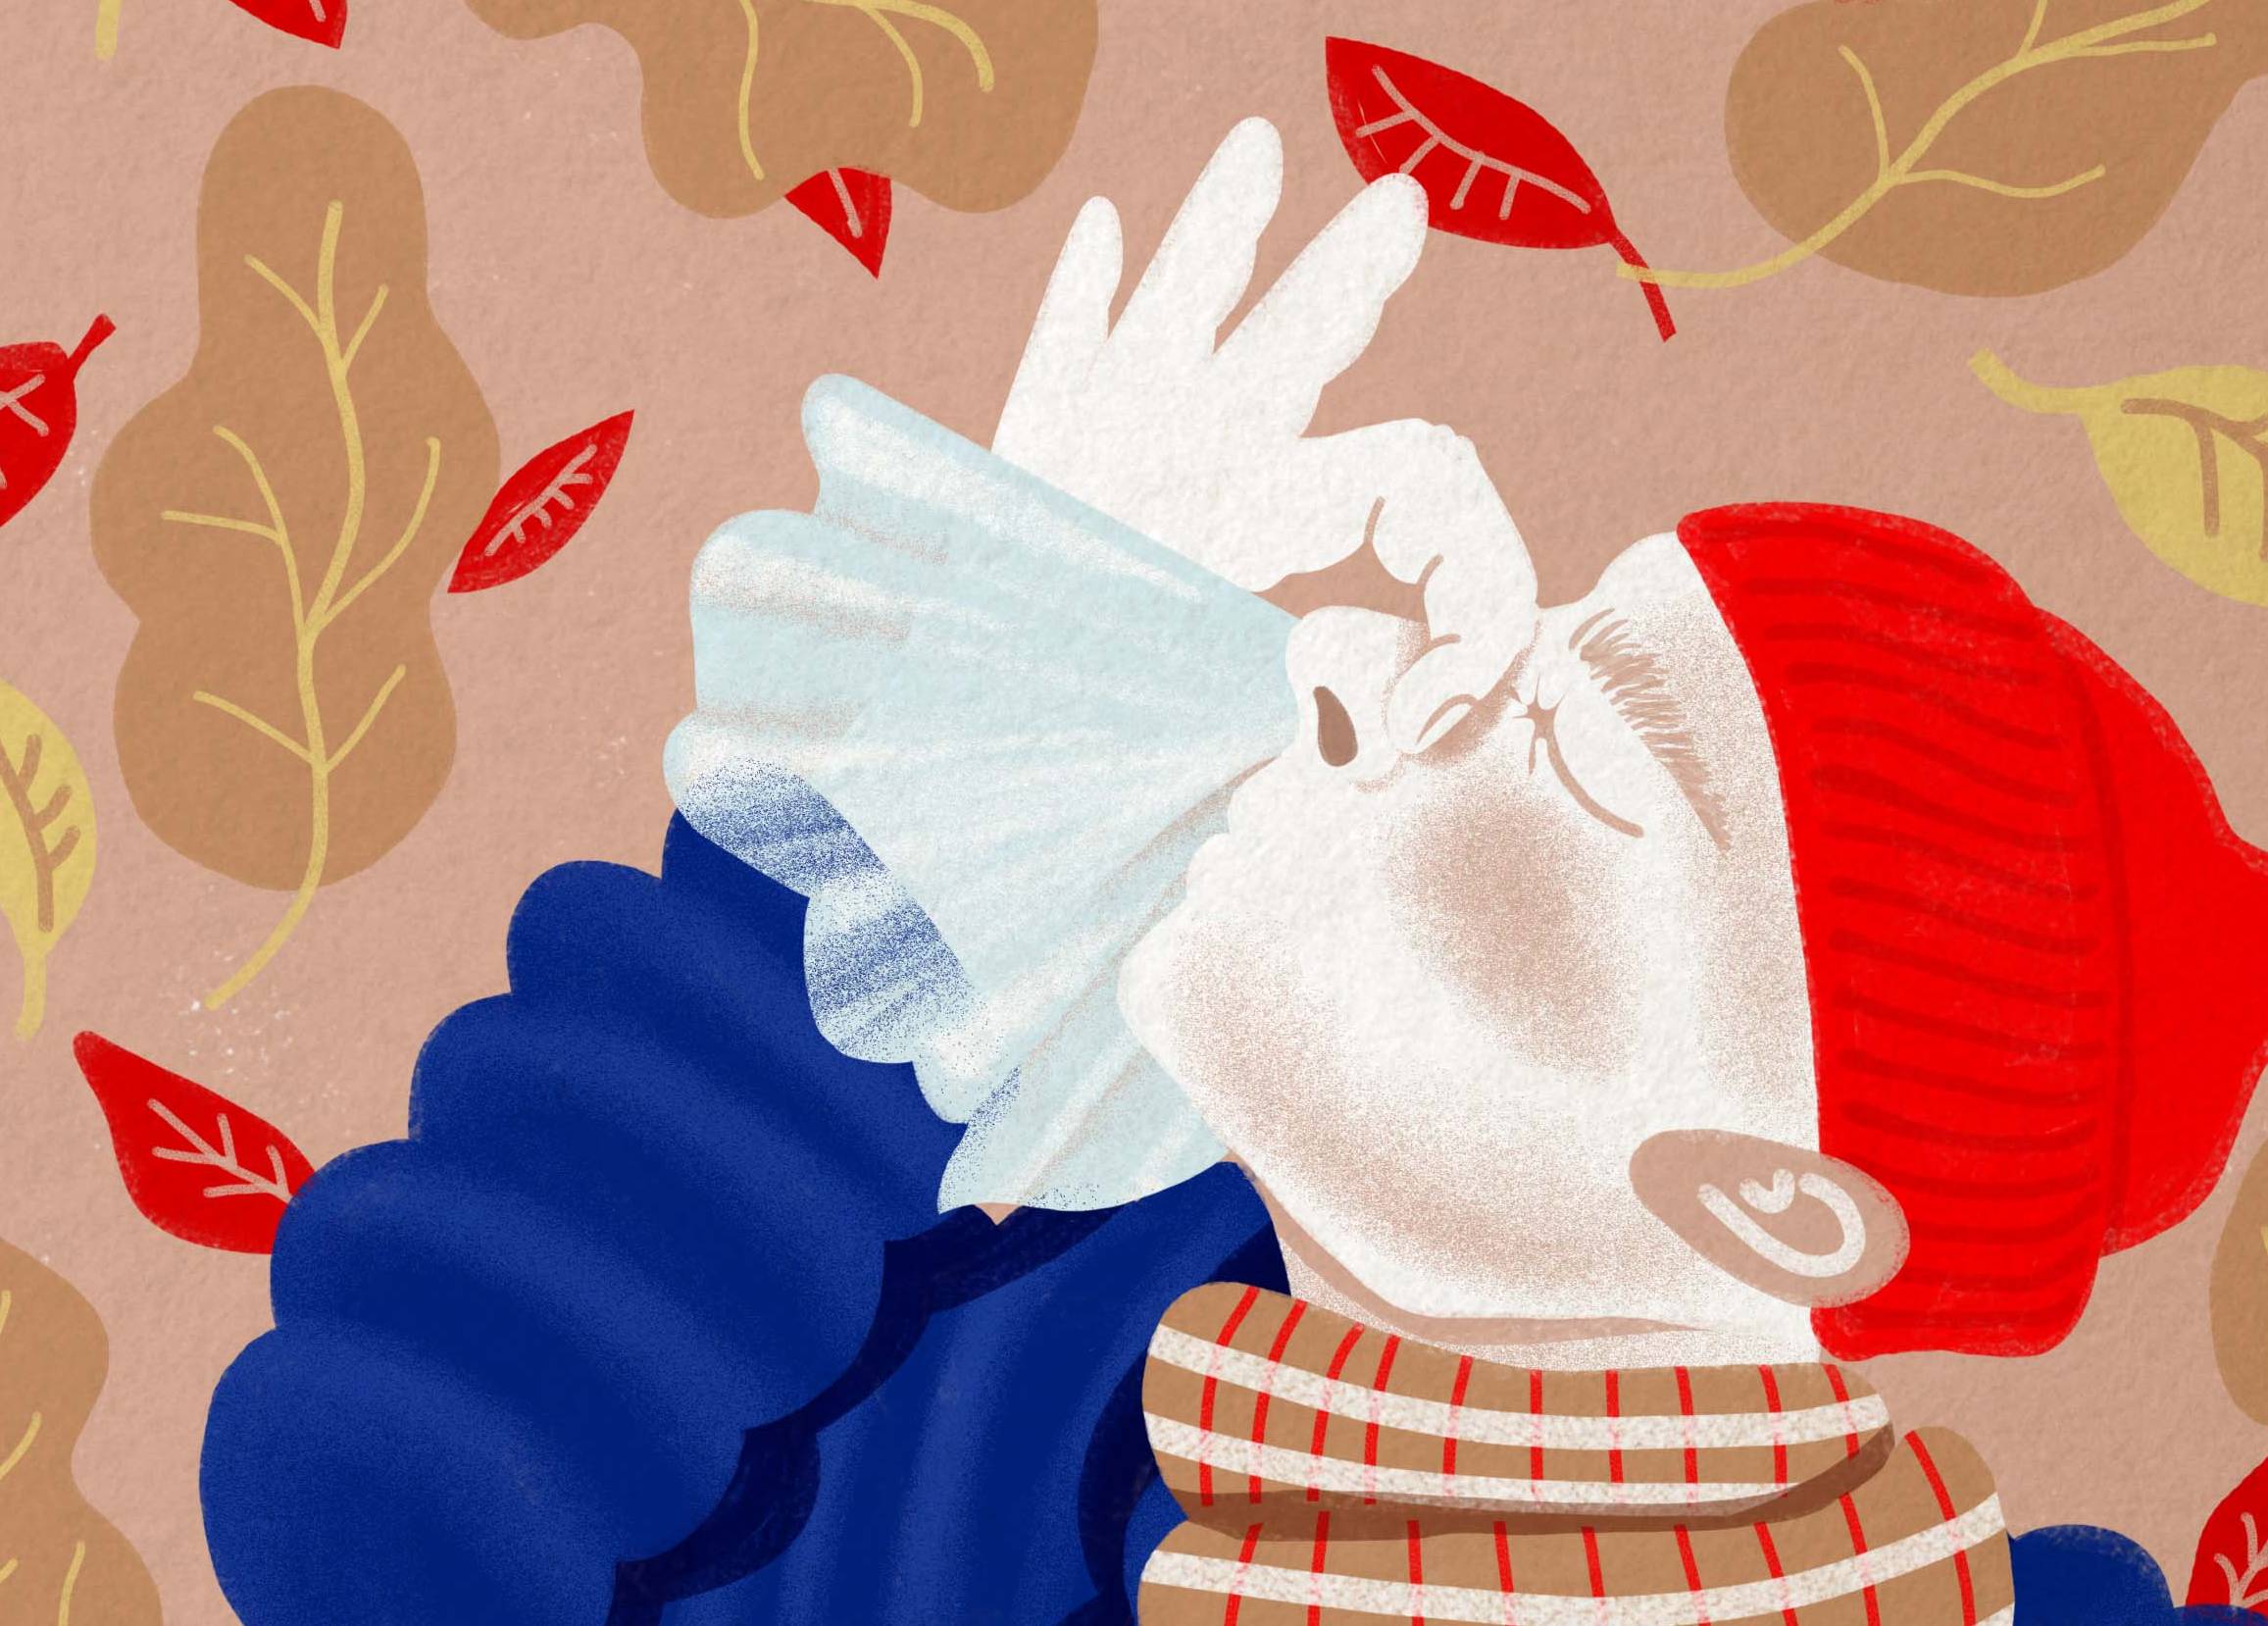 Rysunek przedstawia kichającego osobnika w czapce i z dużym szalikiem wokół szyi